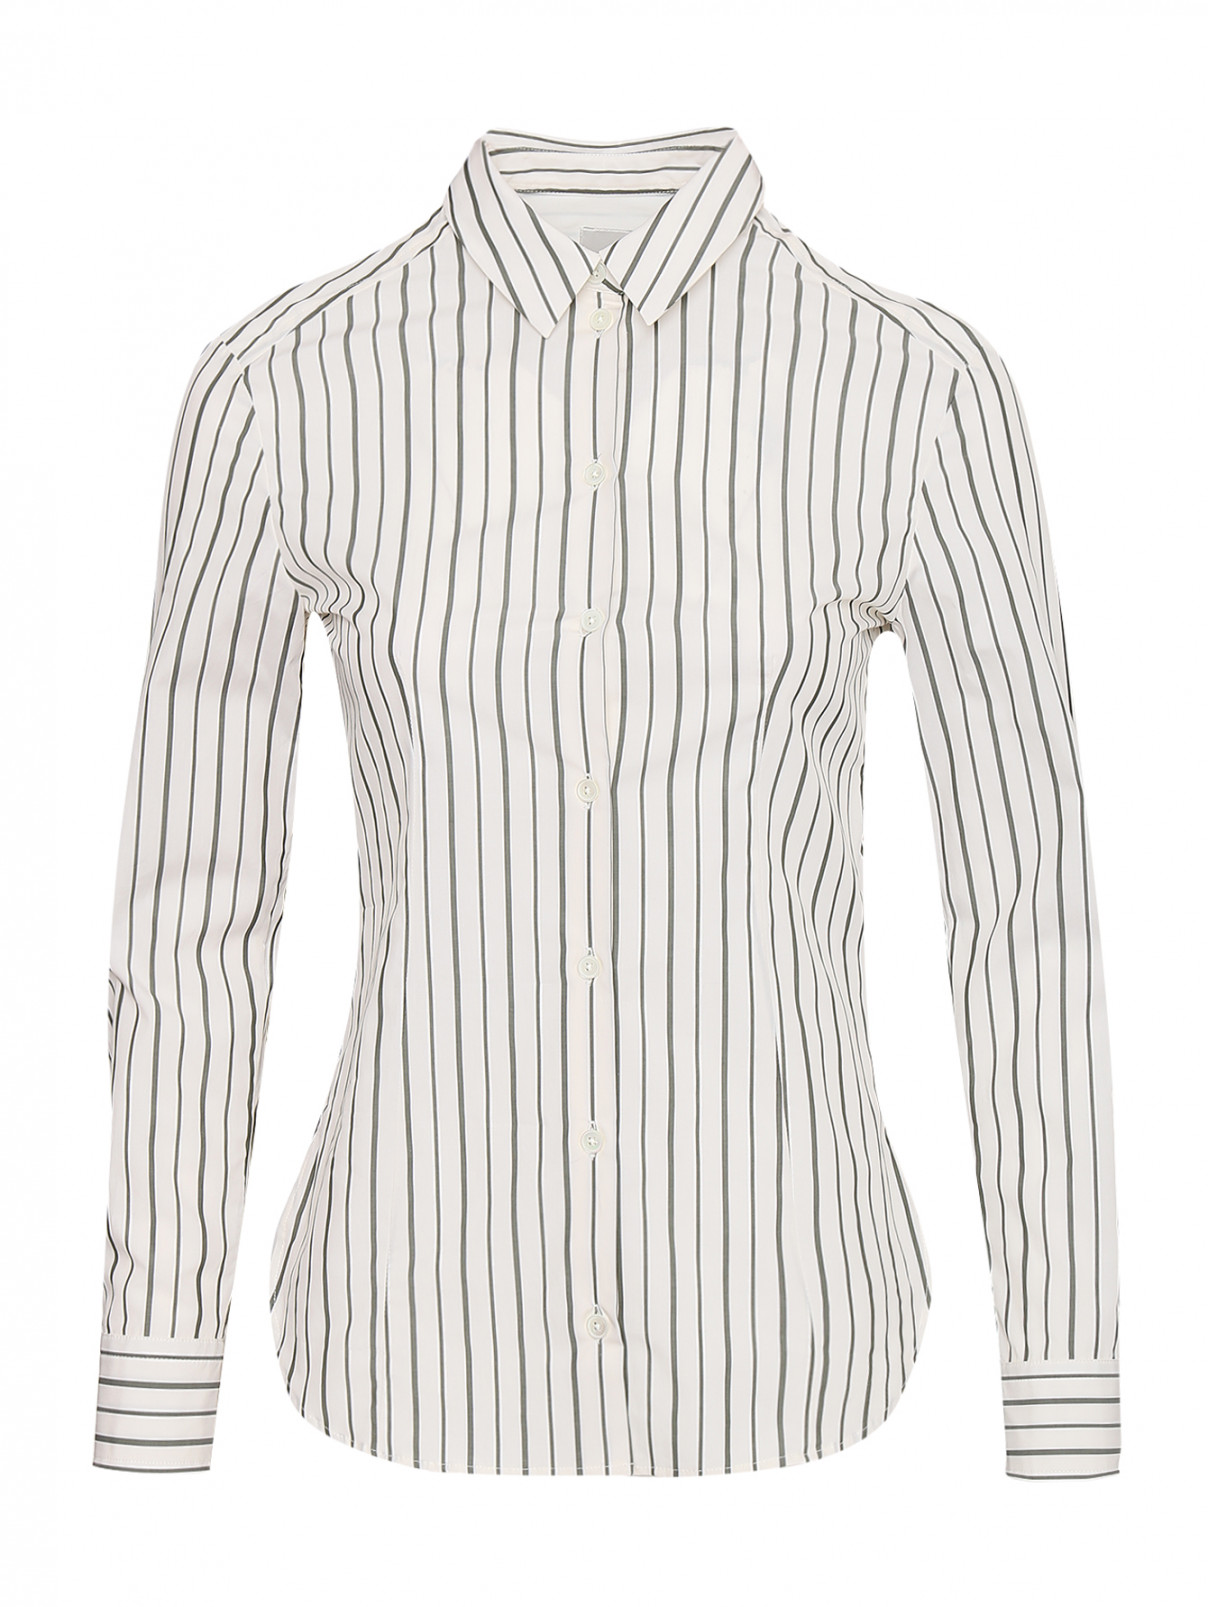 Рубашка из хлопка с узором полоска Paul Smith  –  Общий вид  – Цвет:  Узор